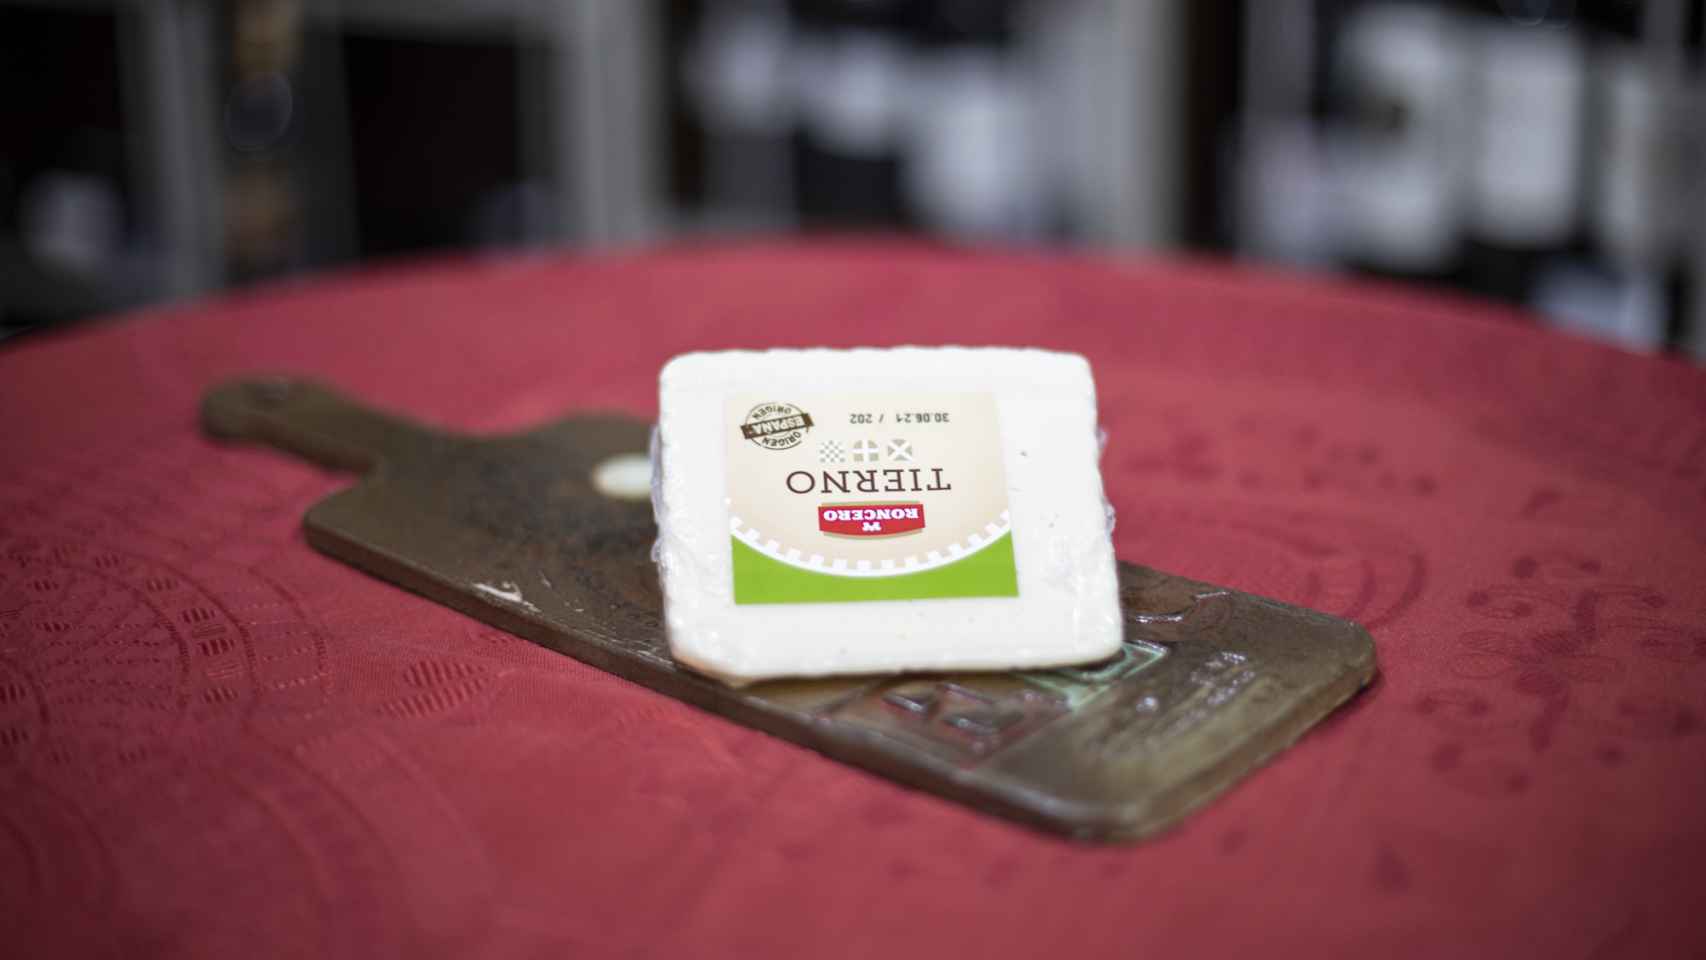 La cuña de queso tierno de Roncero, la marca blanca de Lidl.